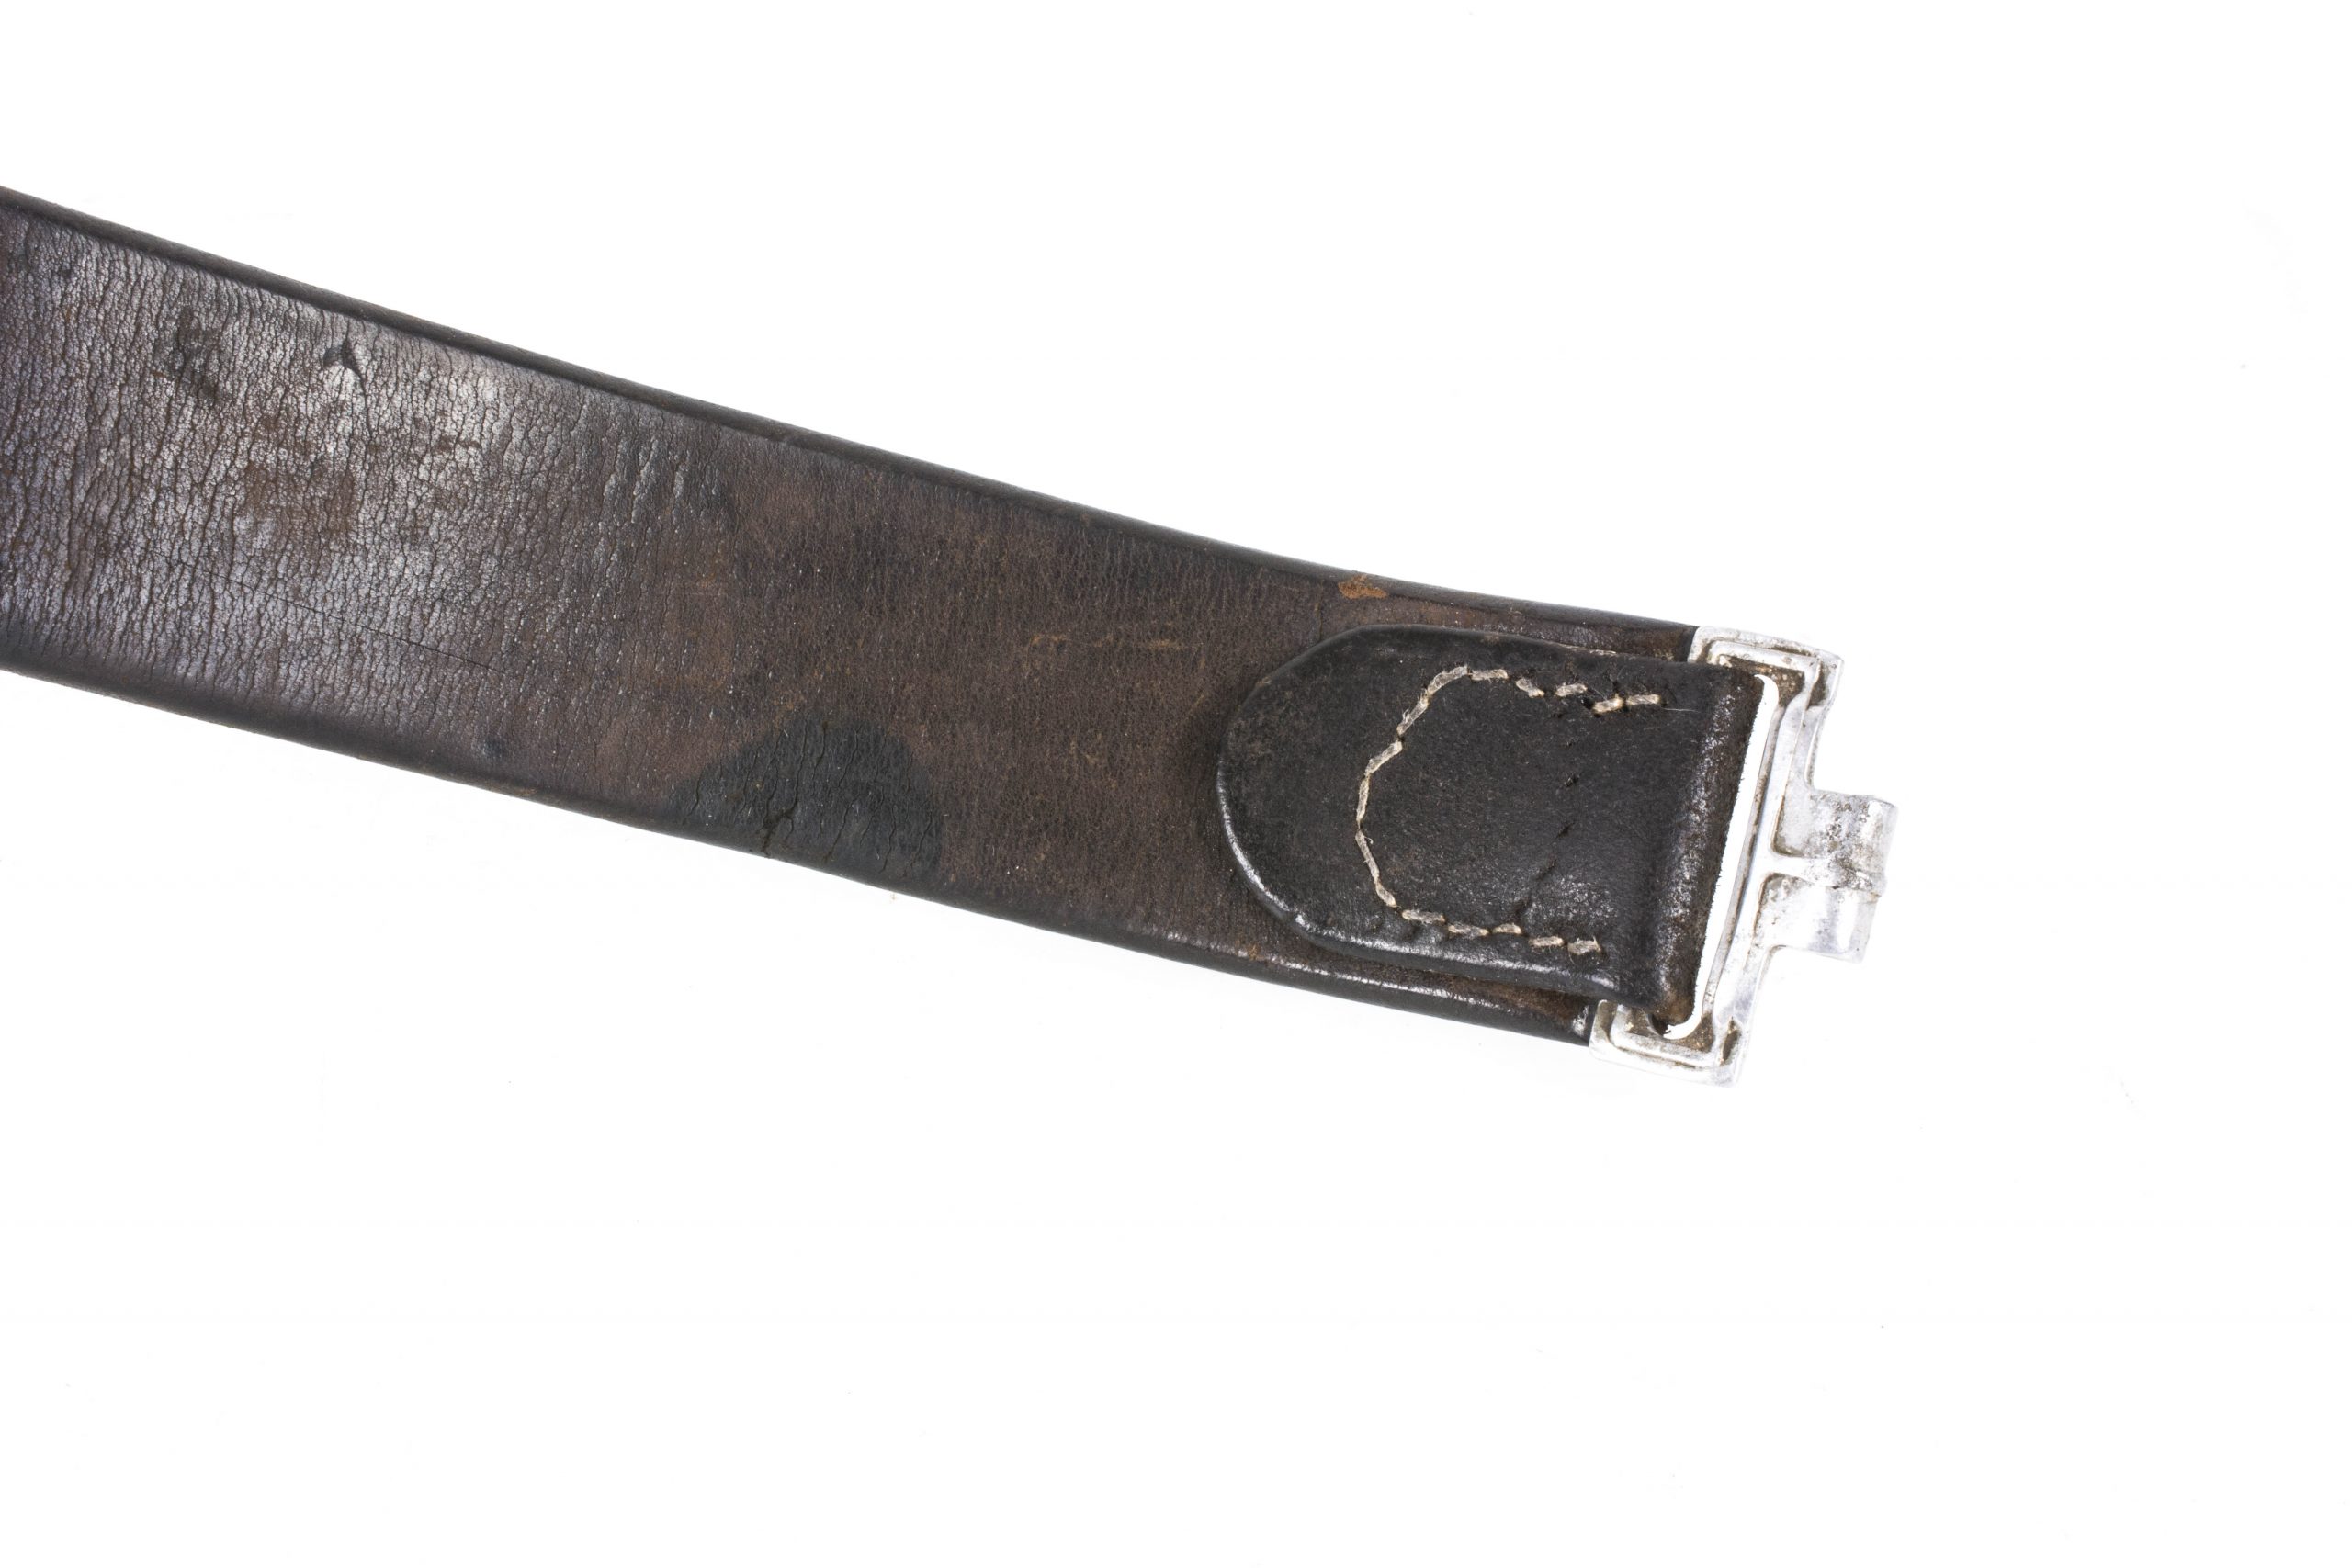 Pre war Heer equipment belt with tabbed aluminum buckle – fjm44